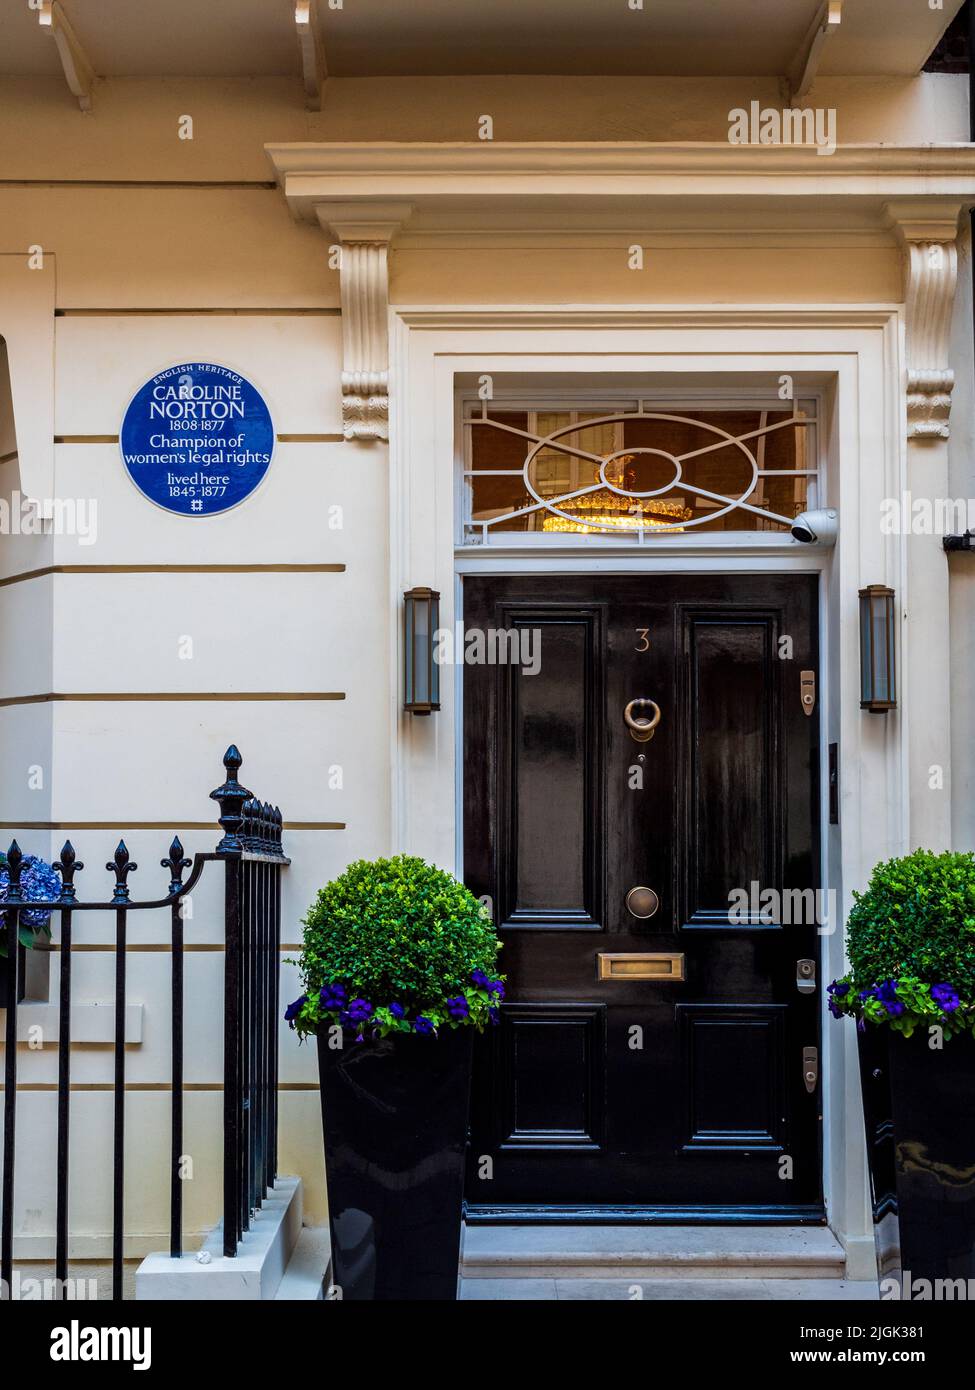 Caroline Norton Blue plaque au 3 Chesterfield Street, Mayfair, Londres CAROLINE NORTON 1808–1877 la championne des droits juridiques des femmes a vécu ici 1845–1877 Banque D'Images